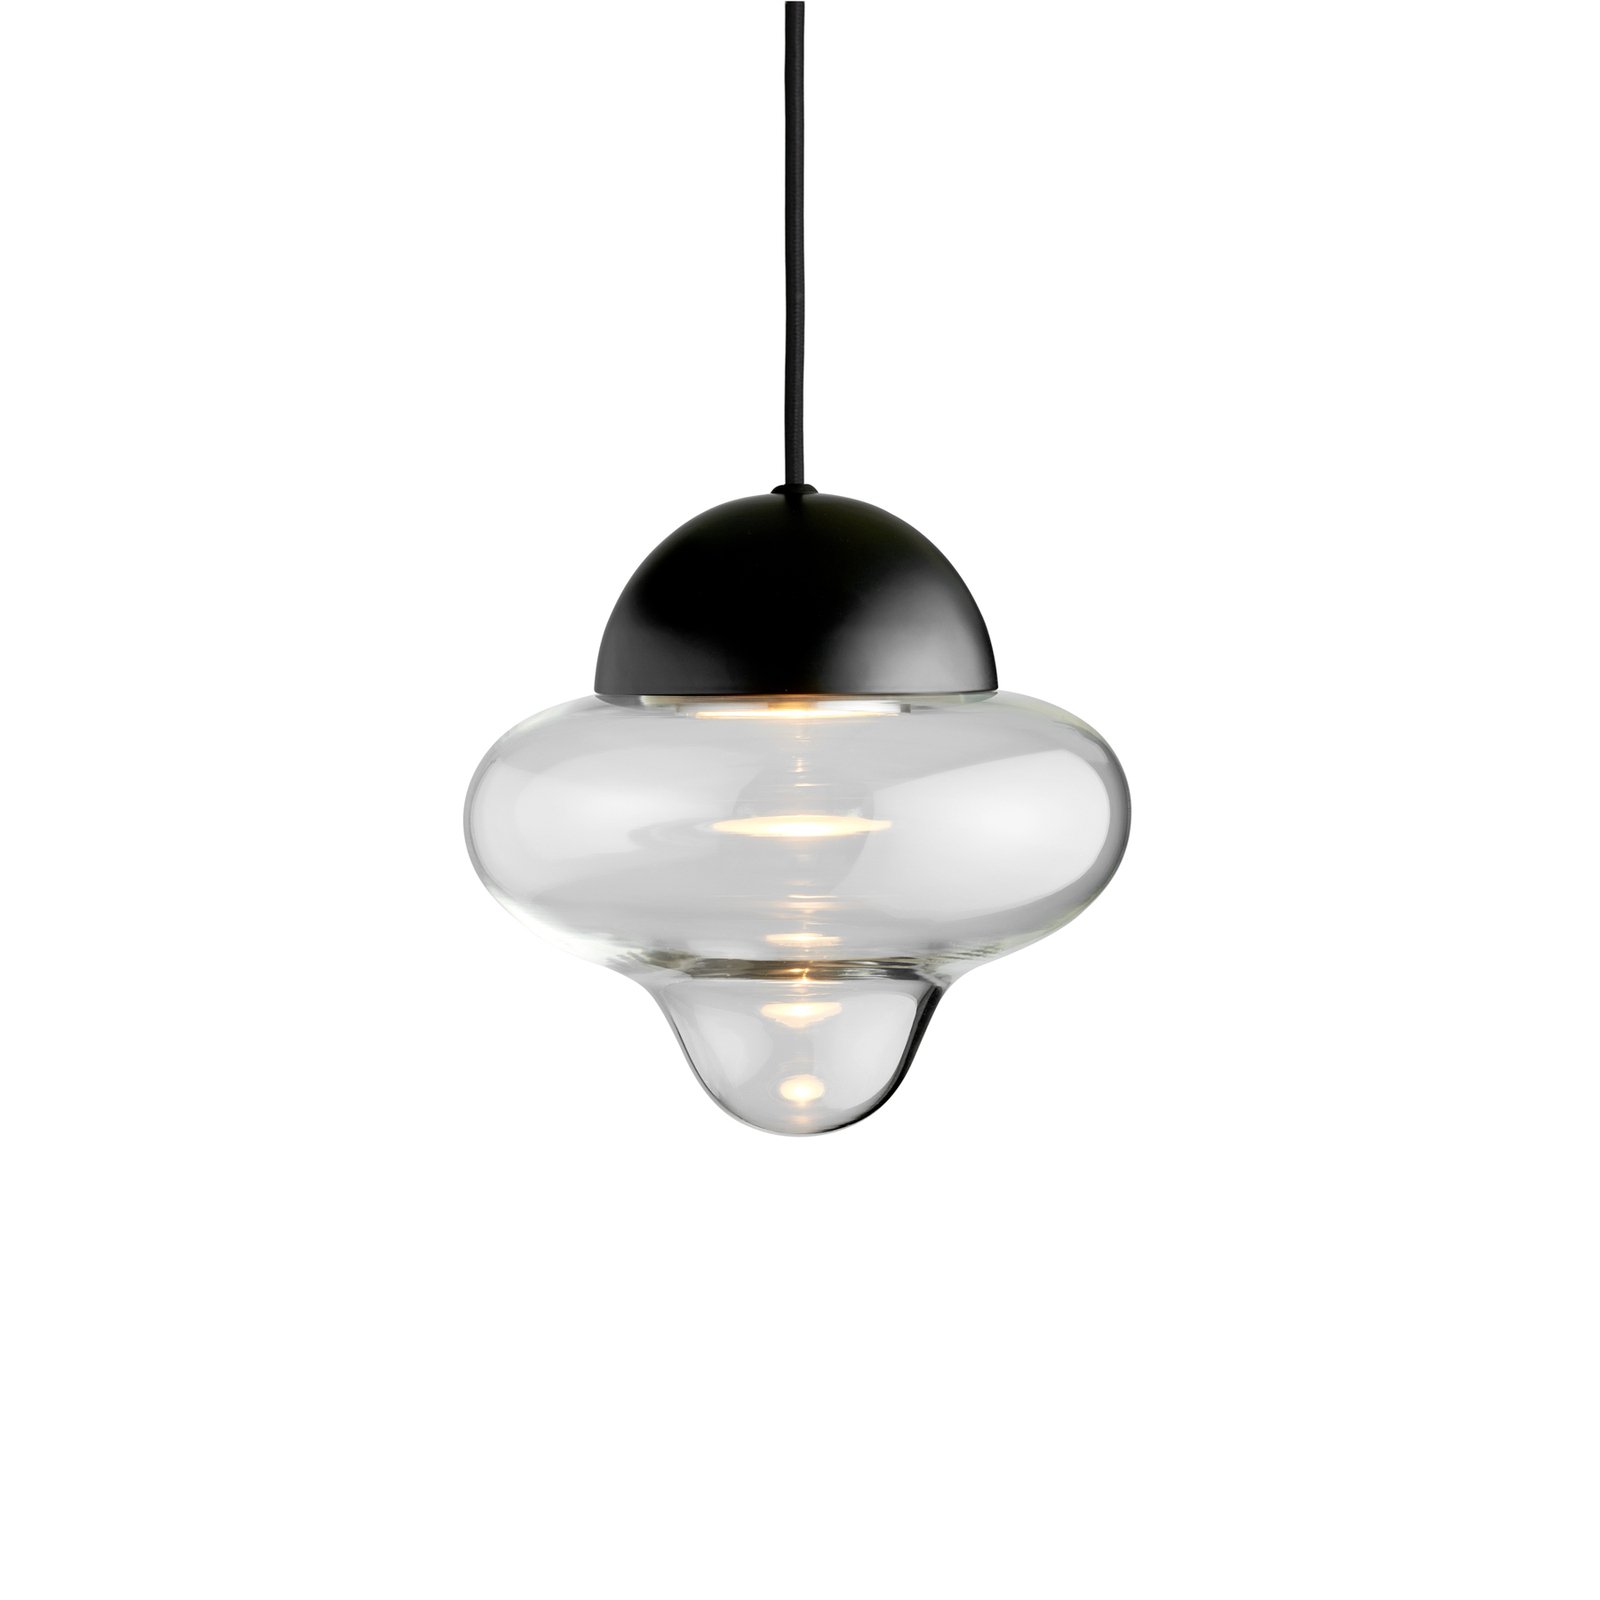 Nutty hanglamp, helder / zwart, Ø 18,5 cm, glas